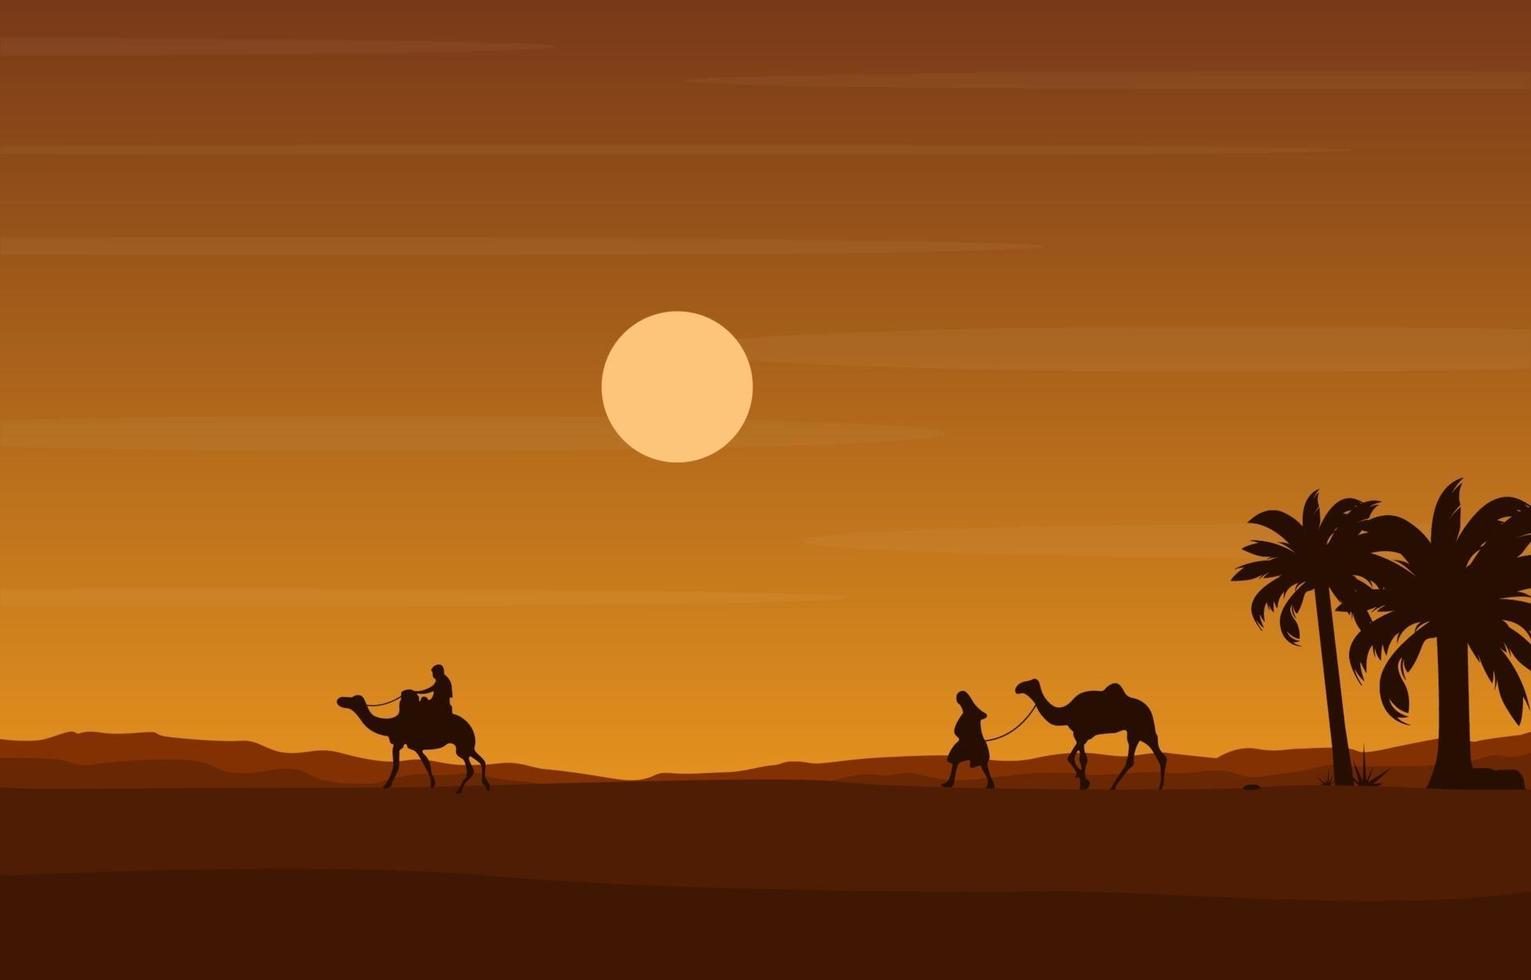 kameelruiter die enorme Arabische het landschapsillustratie van de woestijnheuvel kruist vector